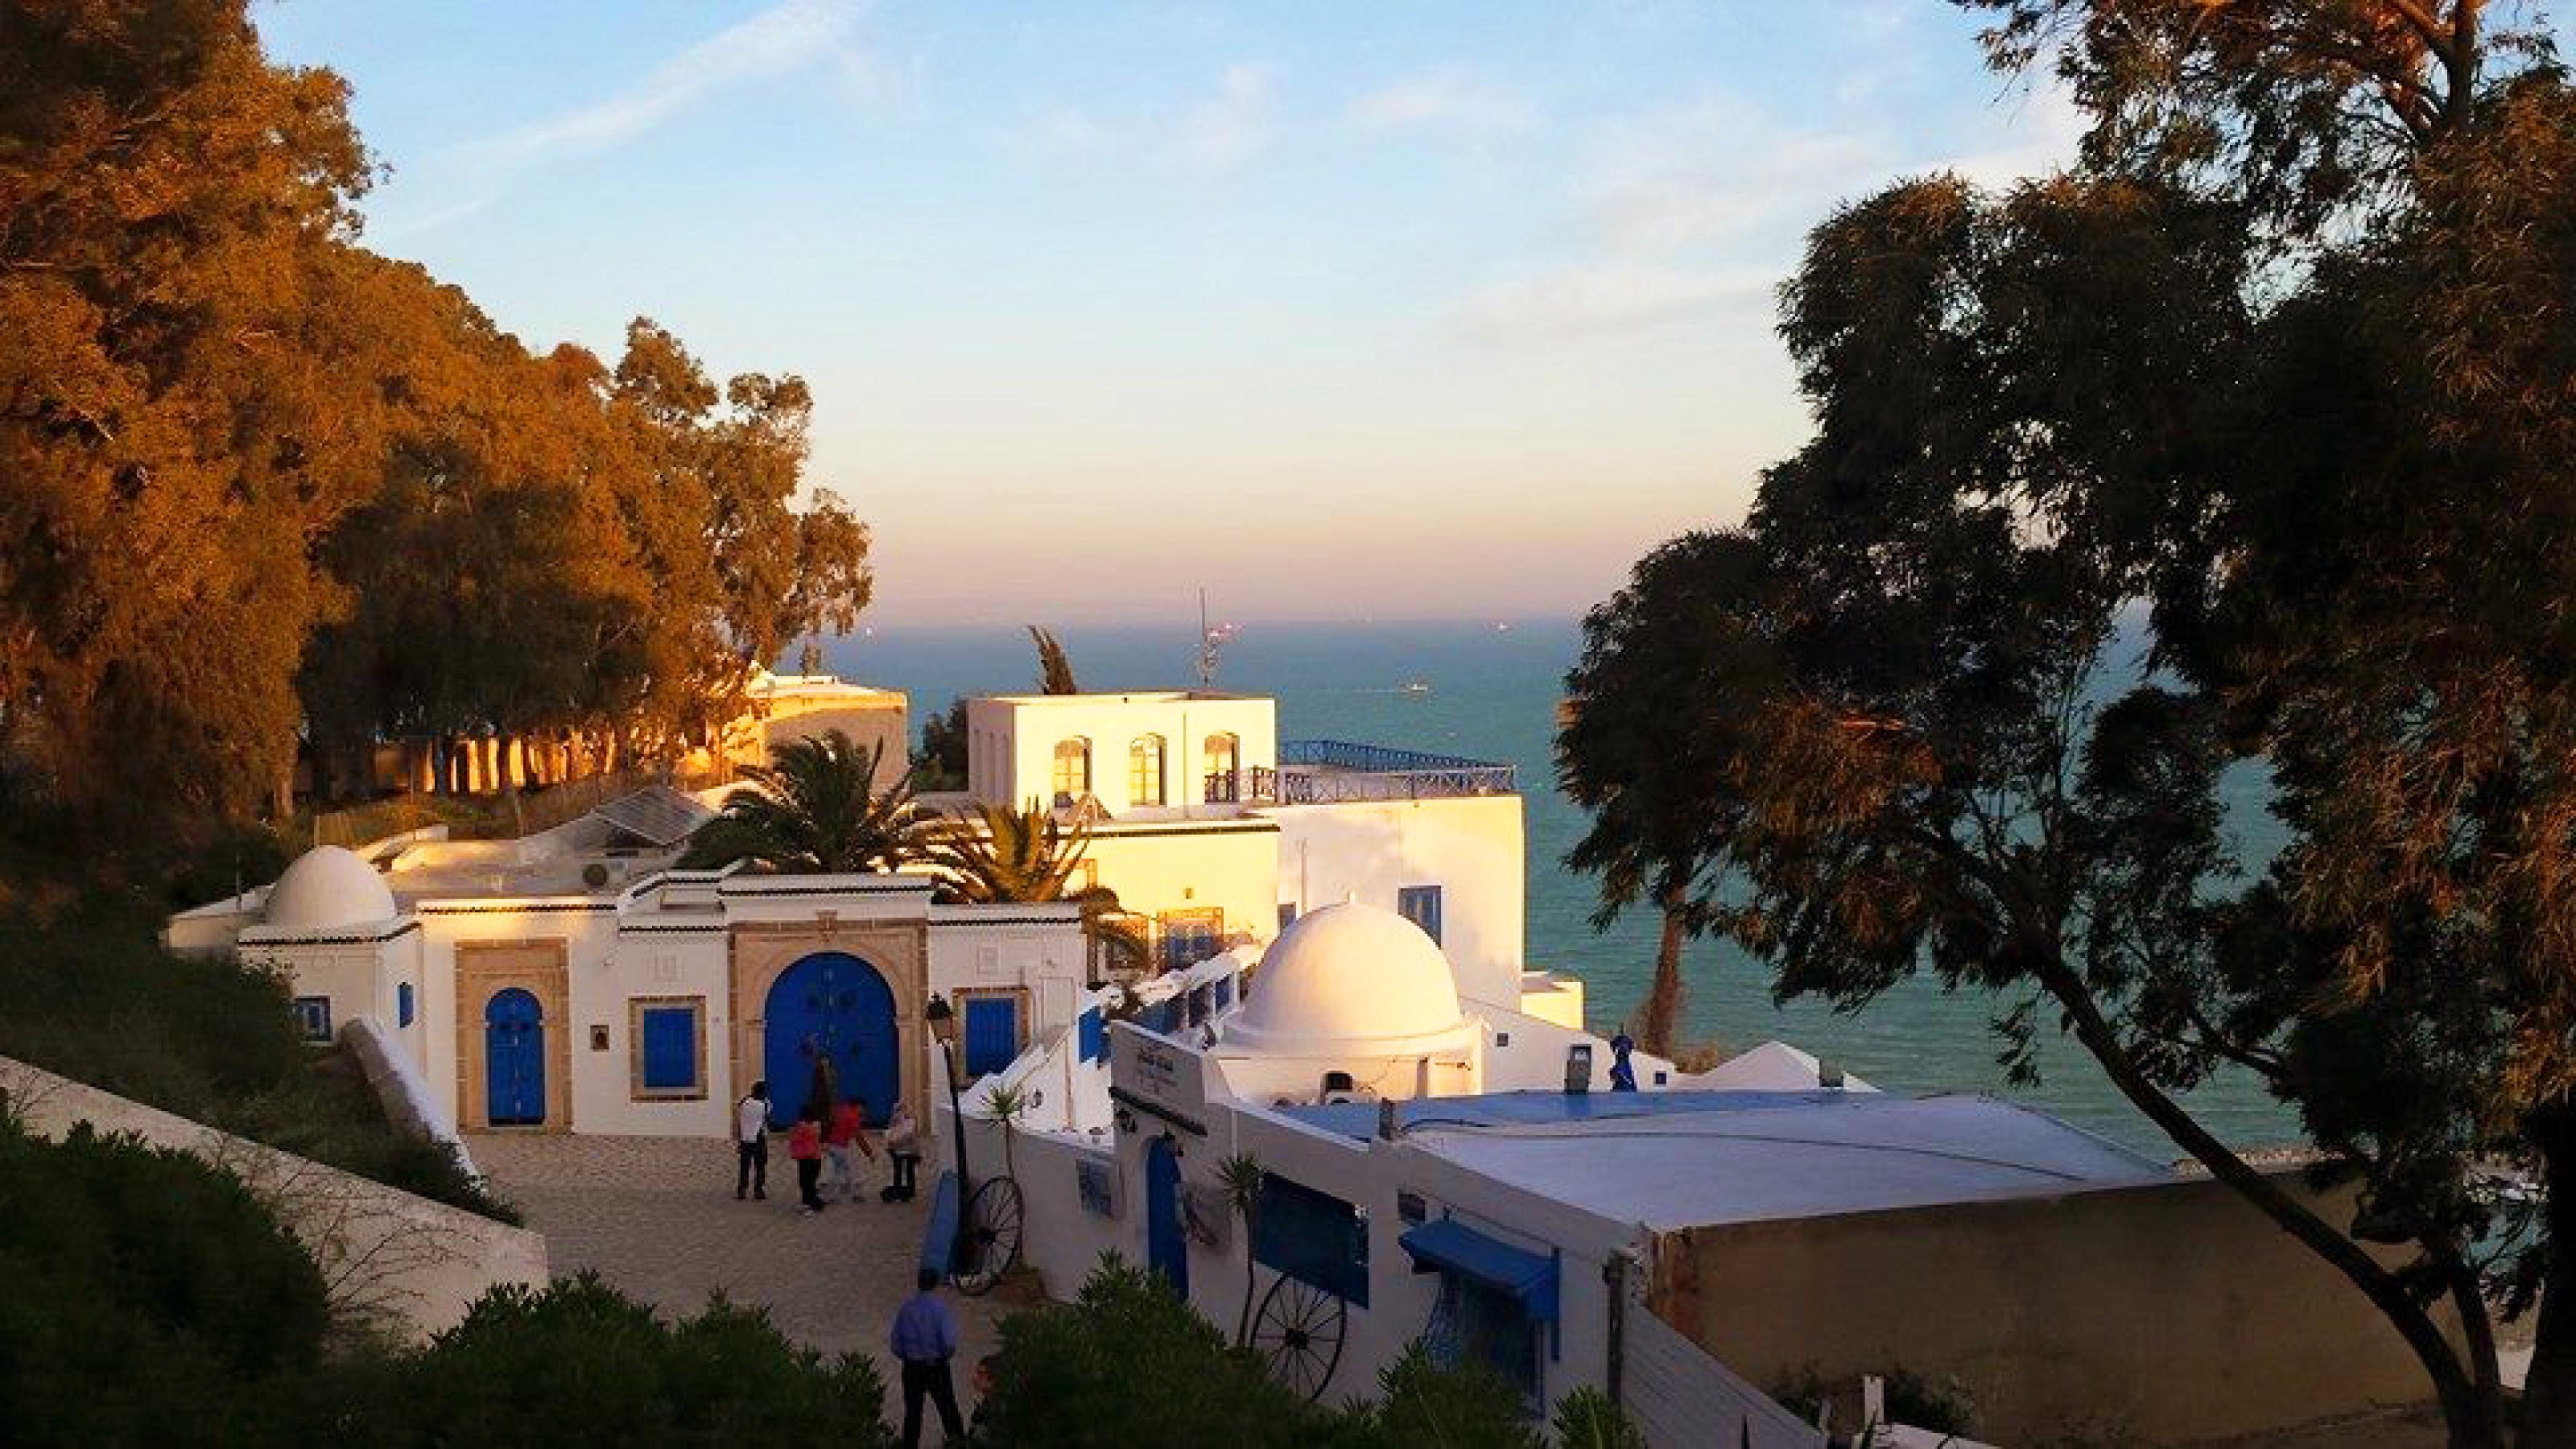 Blick auf ein Café in Sidi Bou Said, einem Vorort von Tunis, im Abendlicht, mit Blick auf das Mittelmeer im Hintergrund